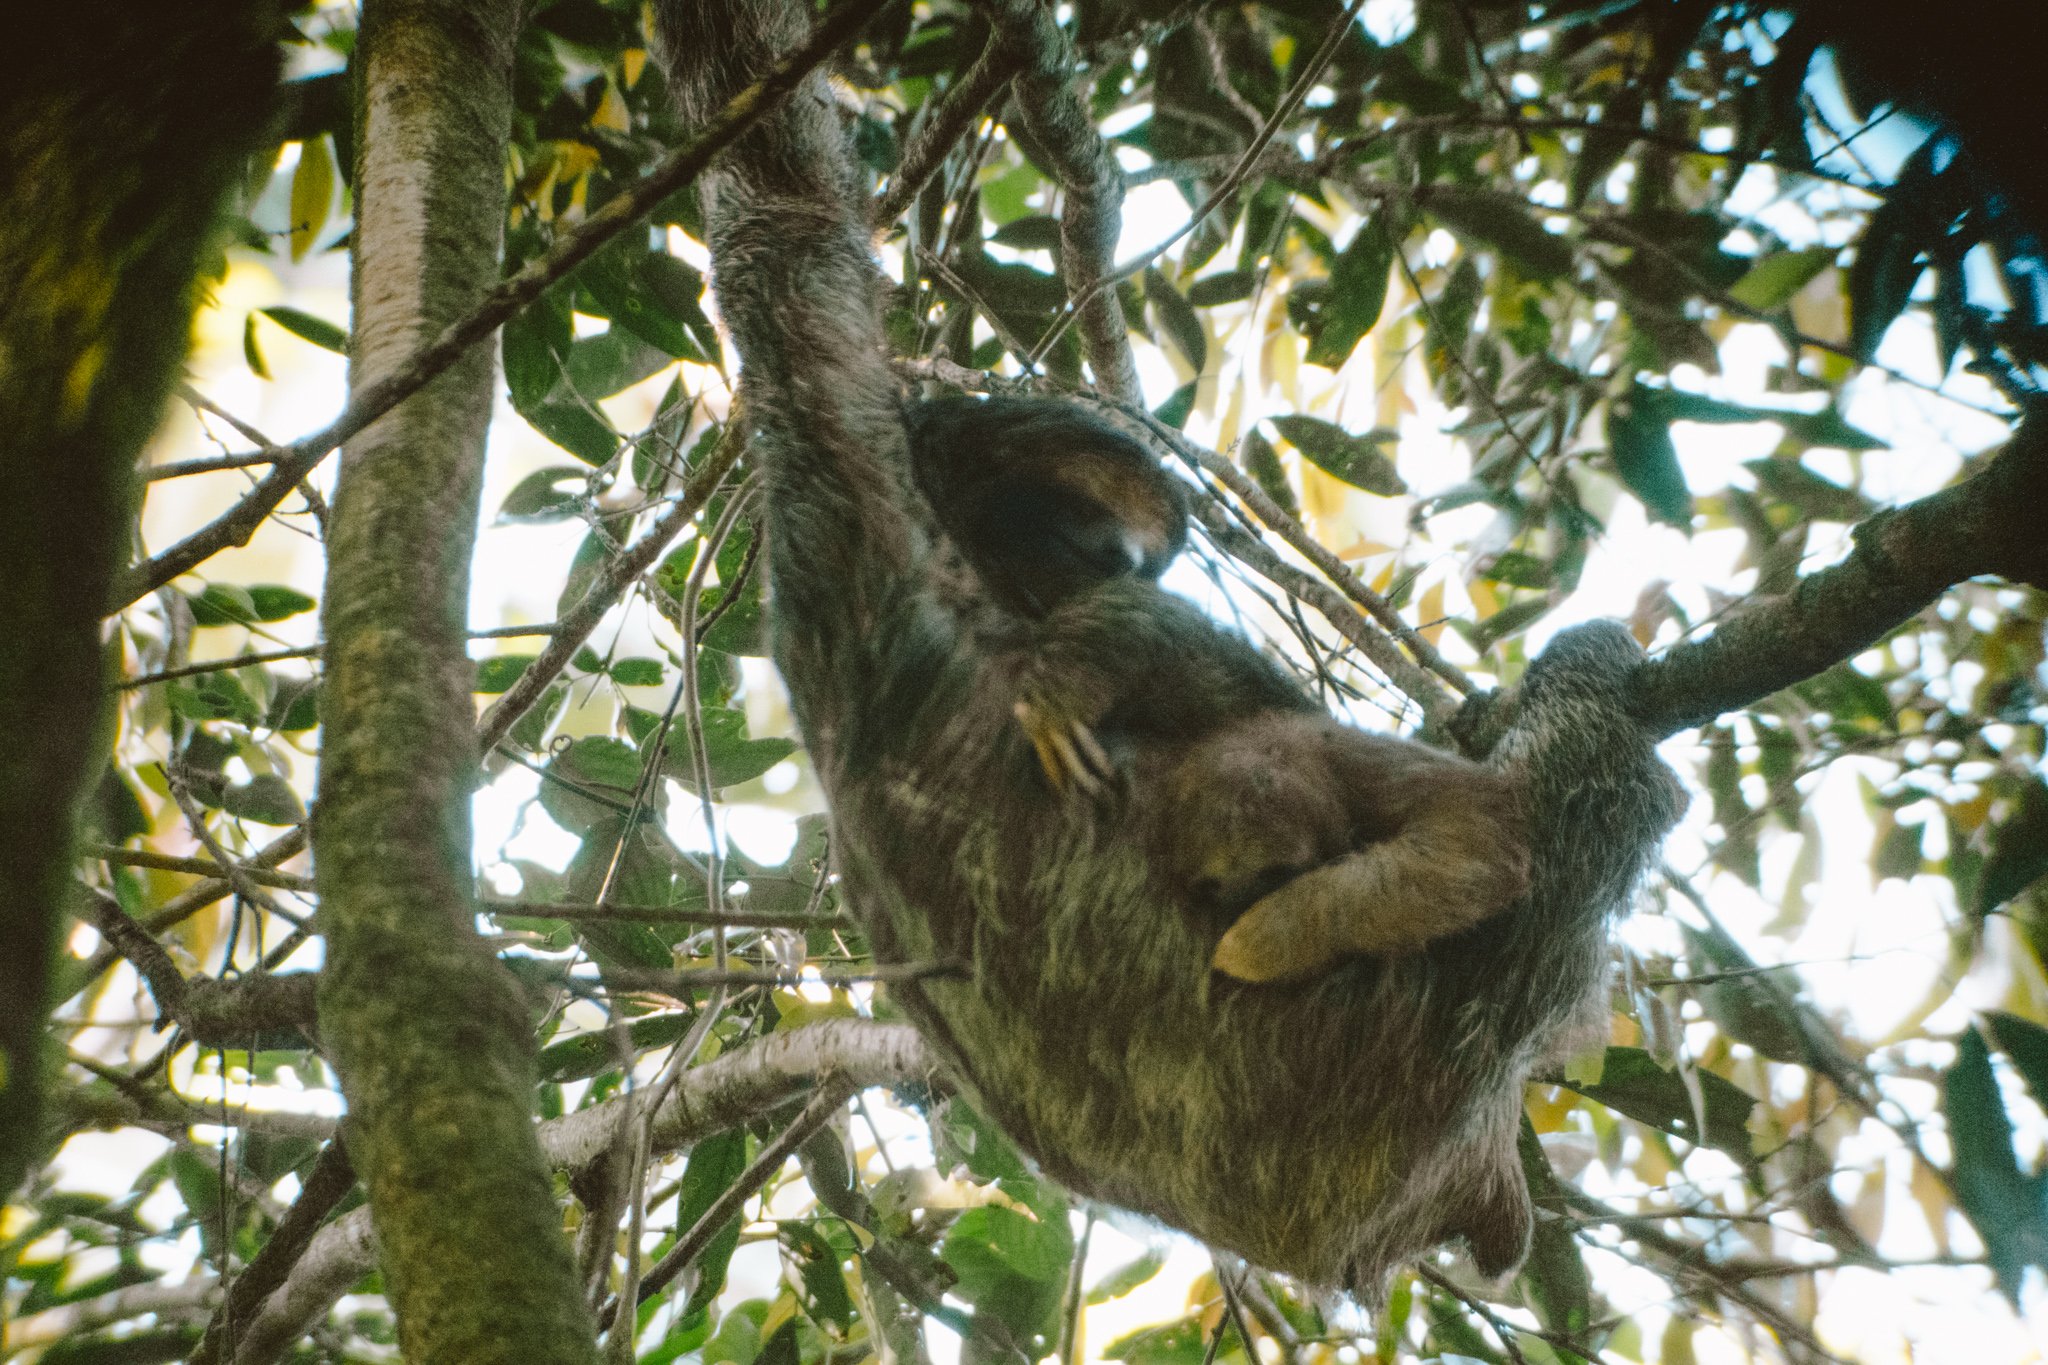 sloth spotting in La Fortuna, Costa Rica